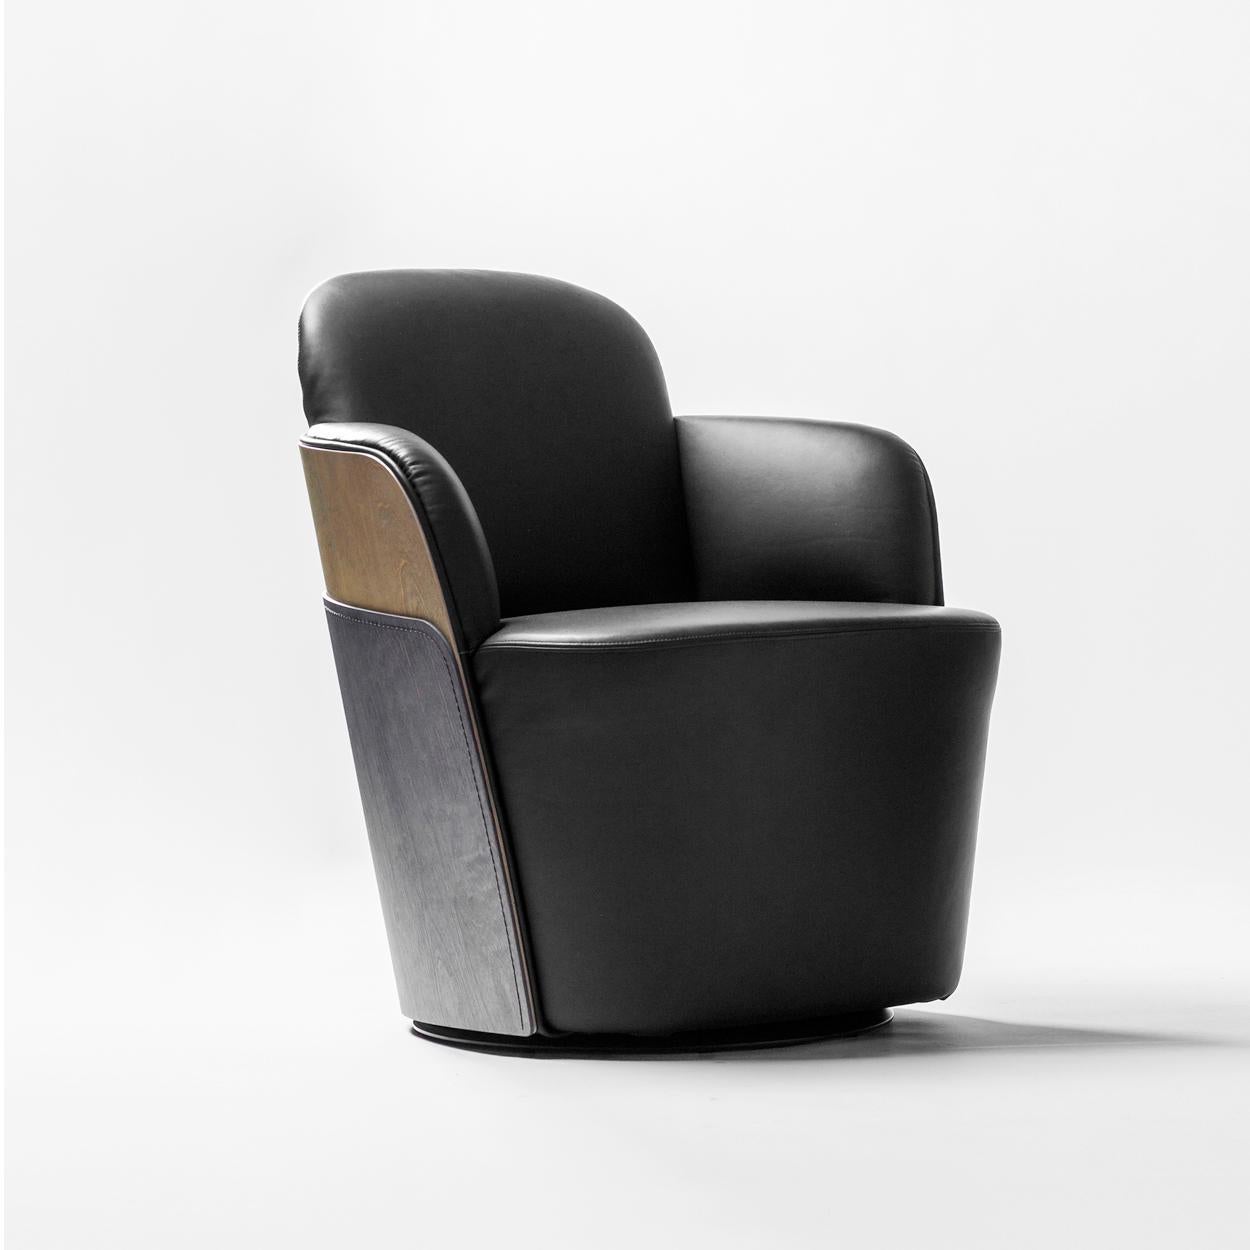 Sessel, entworfen von Färg & Blanche, hergestellt von BD Barcelona.

Sitzstruktur aus Massivholz und gepolstert. Die äußere Rückenlehne besteht aus zwei zusammengenähten Birkensperrholzstücken, die in einer abgenutzten Farbe gebeizt sind. Mit